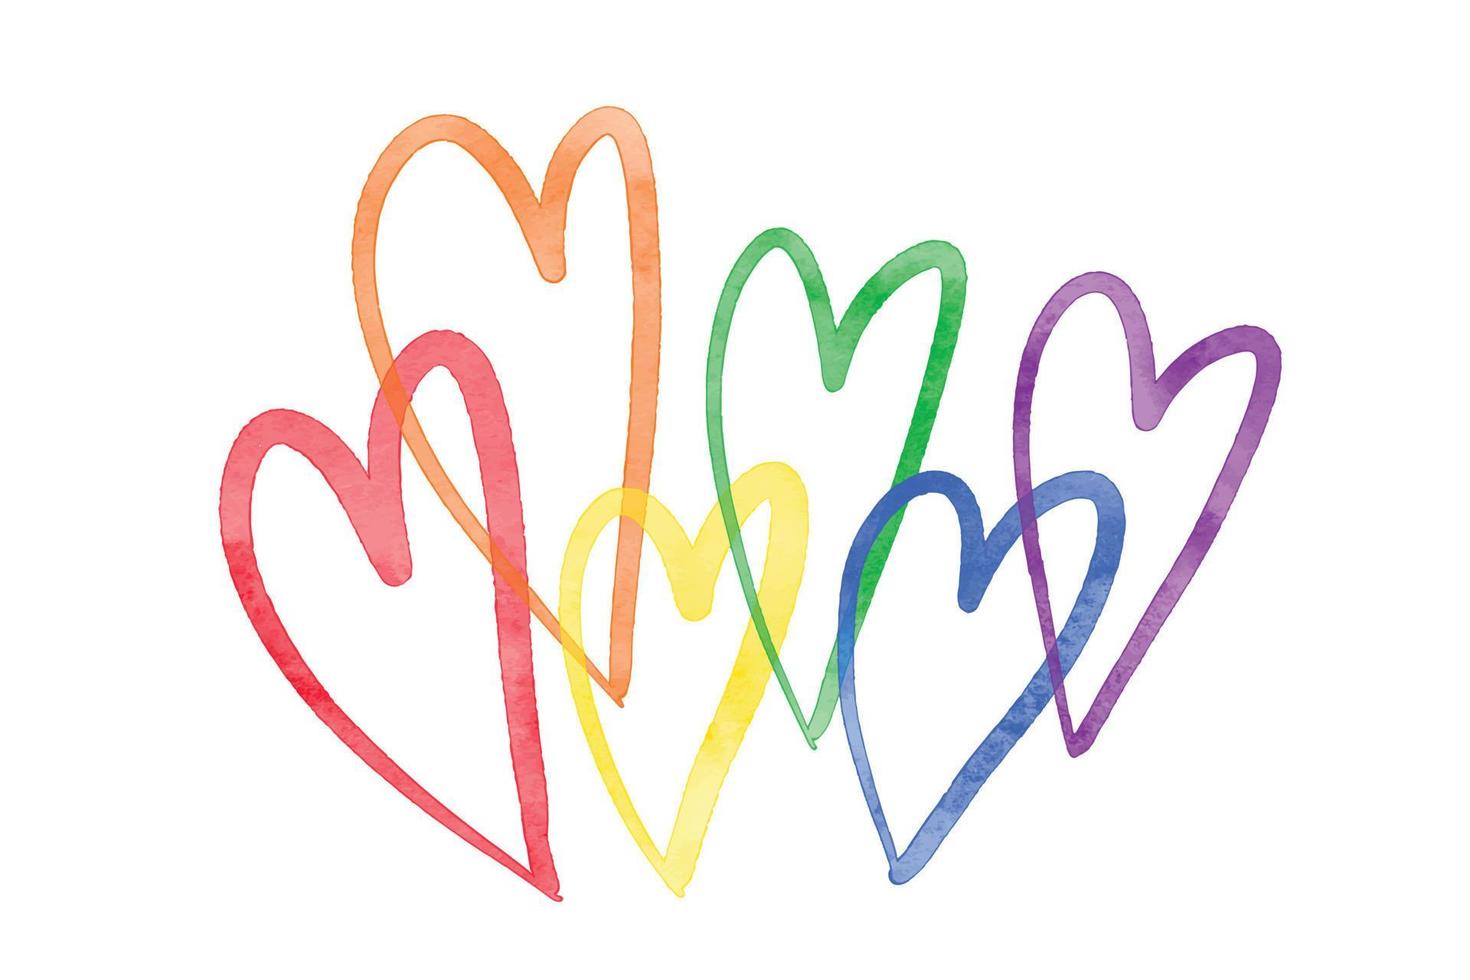 linda acuarela texturizada seis corazones en el color del arco iris de la comunidad lgbt. clip art, logo, símbolo del orgullo lgbt. ilustración vectorial aislado sobre fondo blanco vector